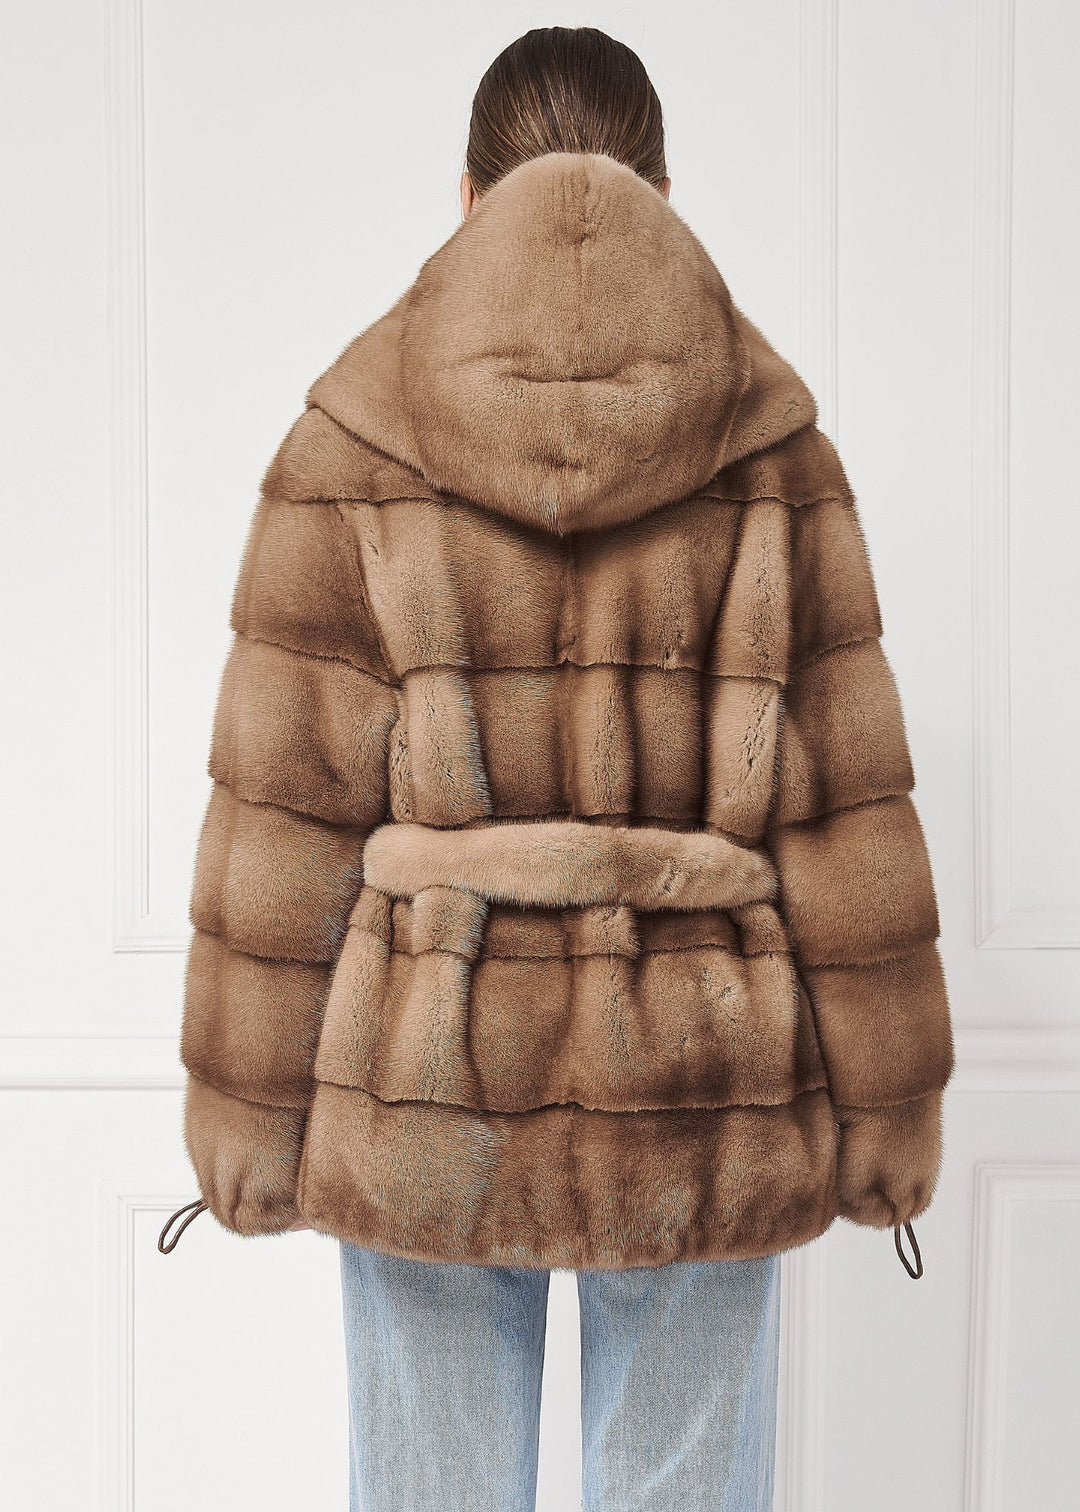 Hooded mink jacket with belt